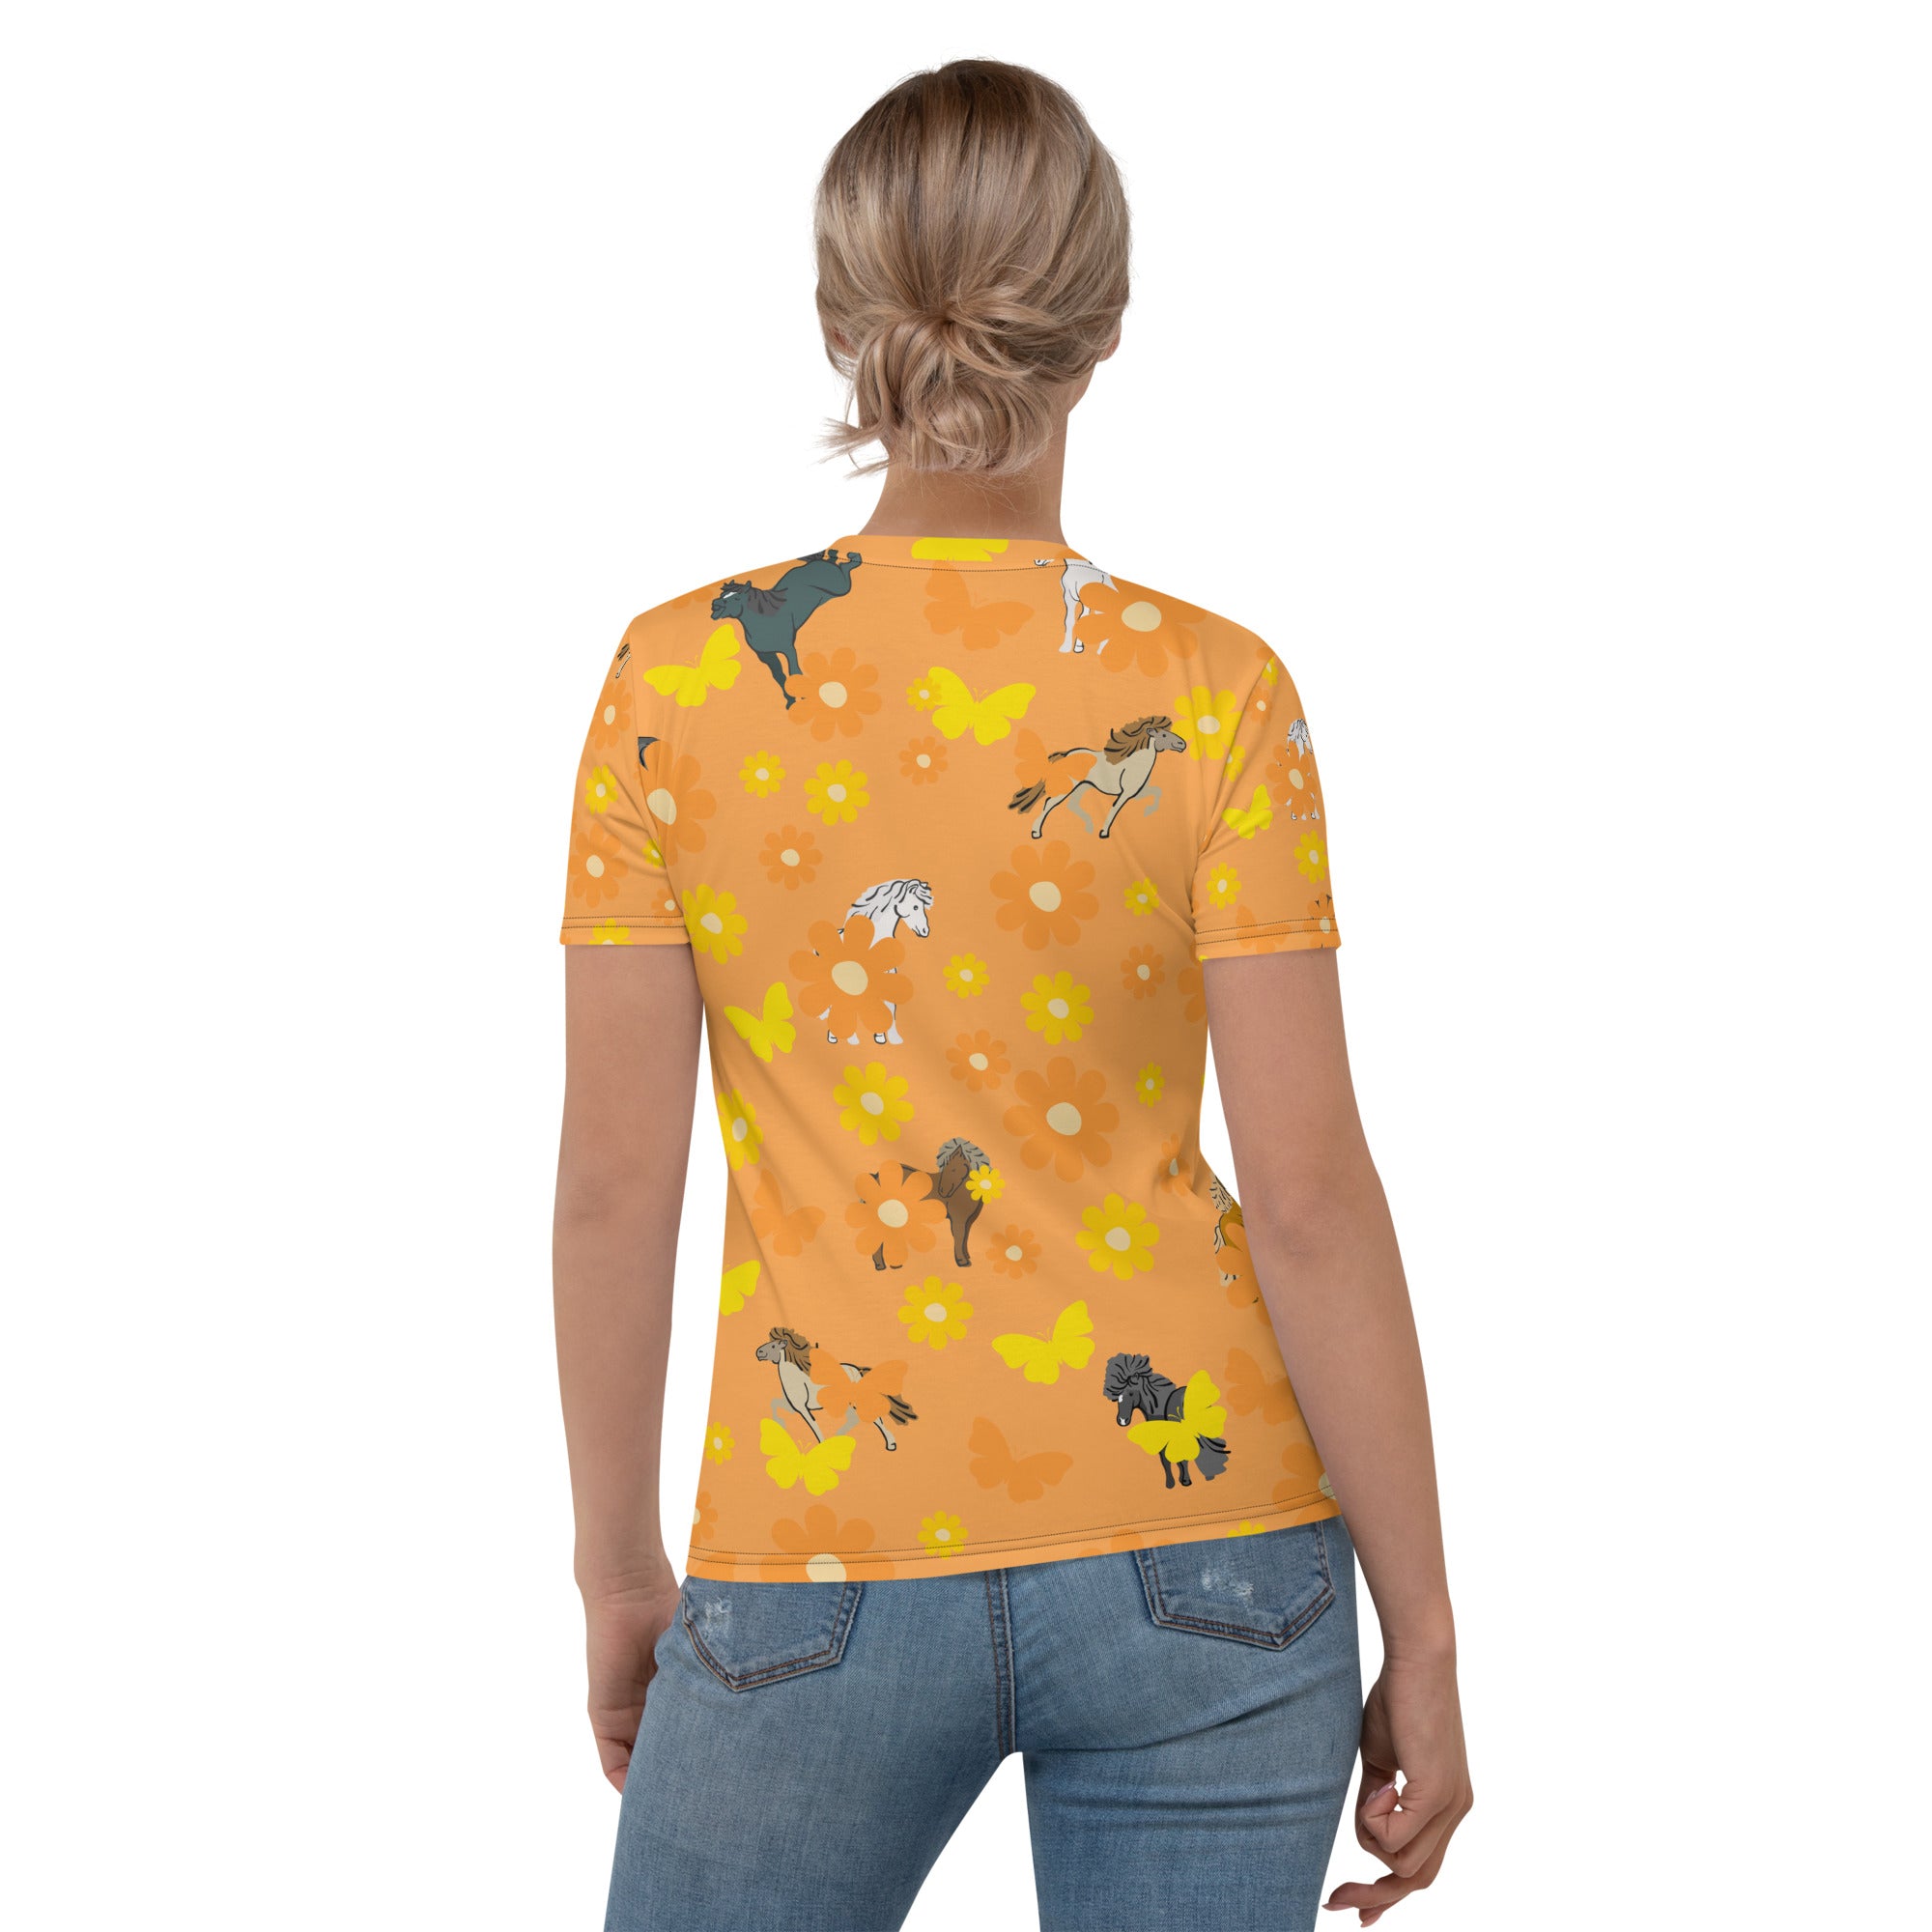 Field of orange daisies Women's T-shirt